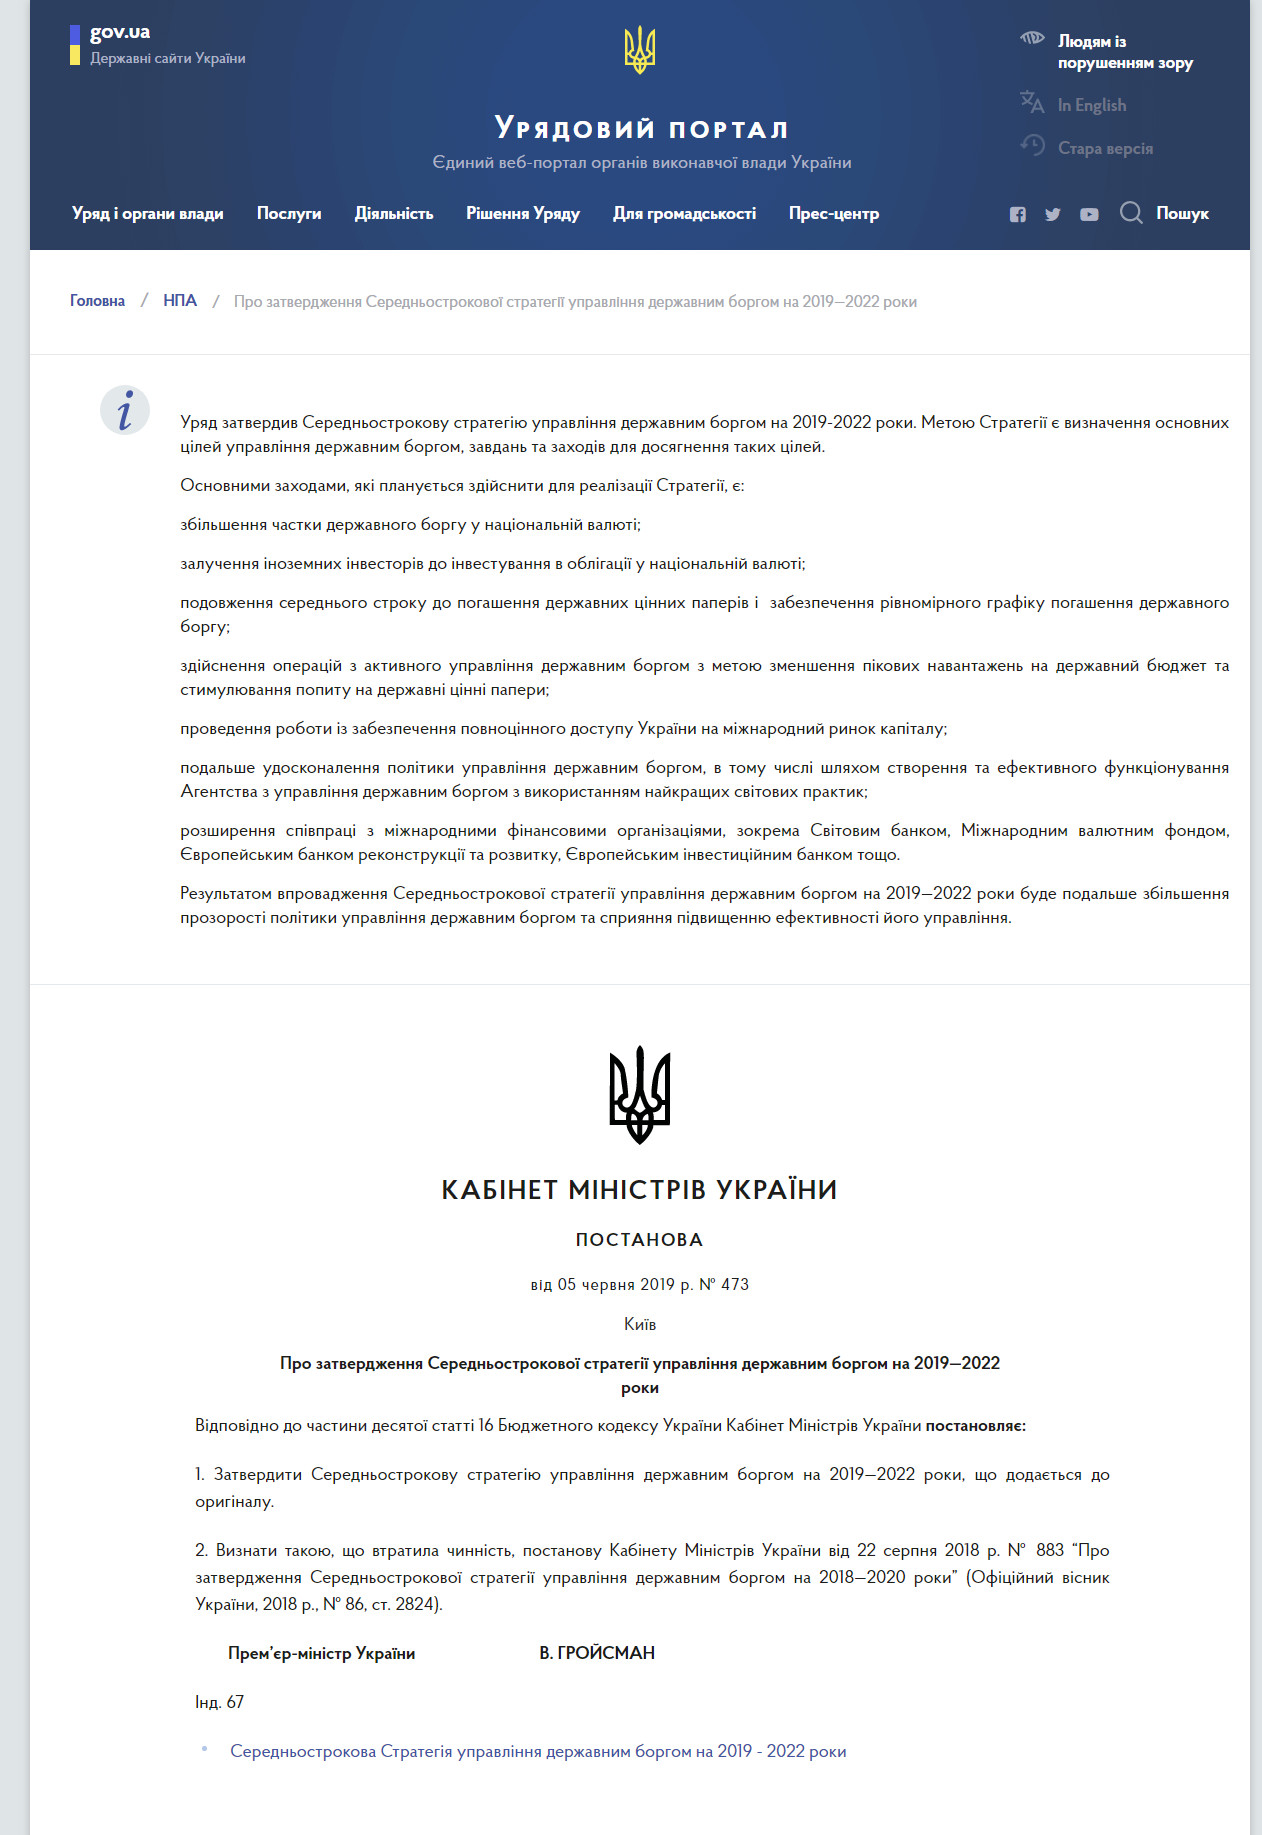 https://www.kmu.gov.ua/ua/npas/pro-zatverdzhennya-serednostrokovoyi-strategiyi-upravlinnya-derzhavnim-borgom-na-20192022-roki